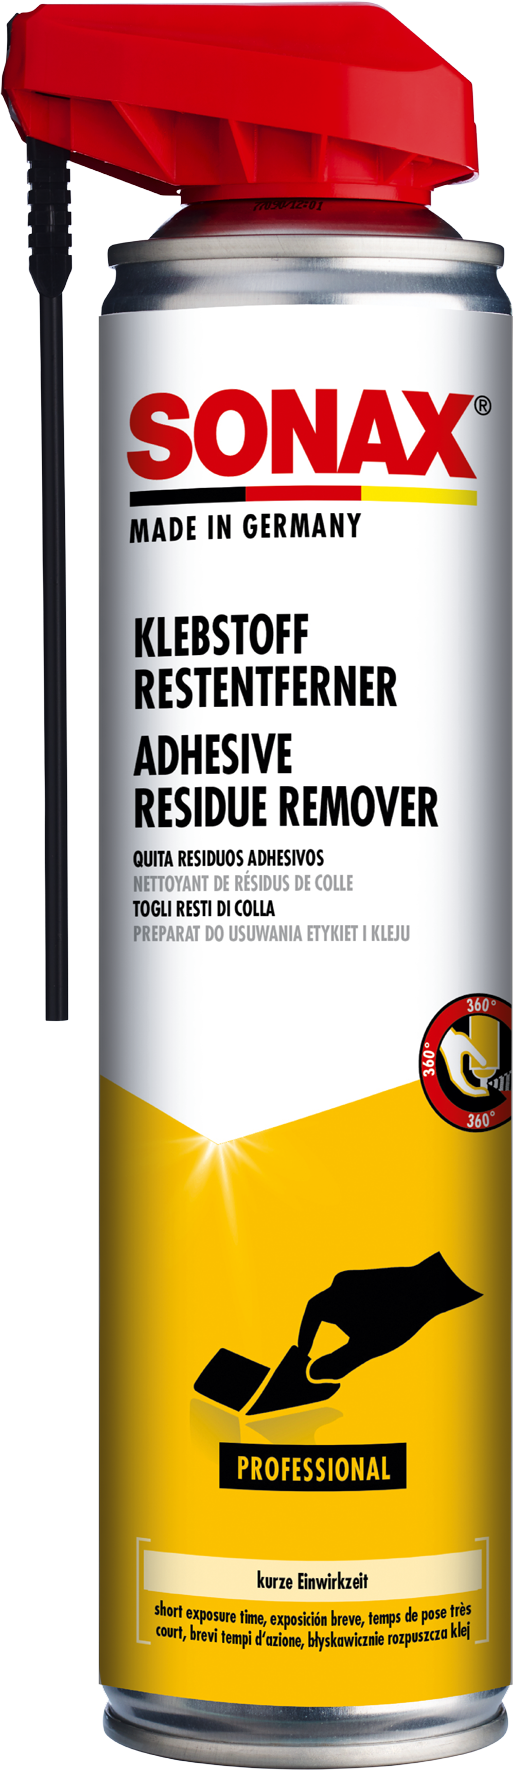 Adhesive Residue Remover with EasySpray- Làm Sạch Băng Keo Dán kèm Đầu Phun Đa Năng